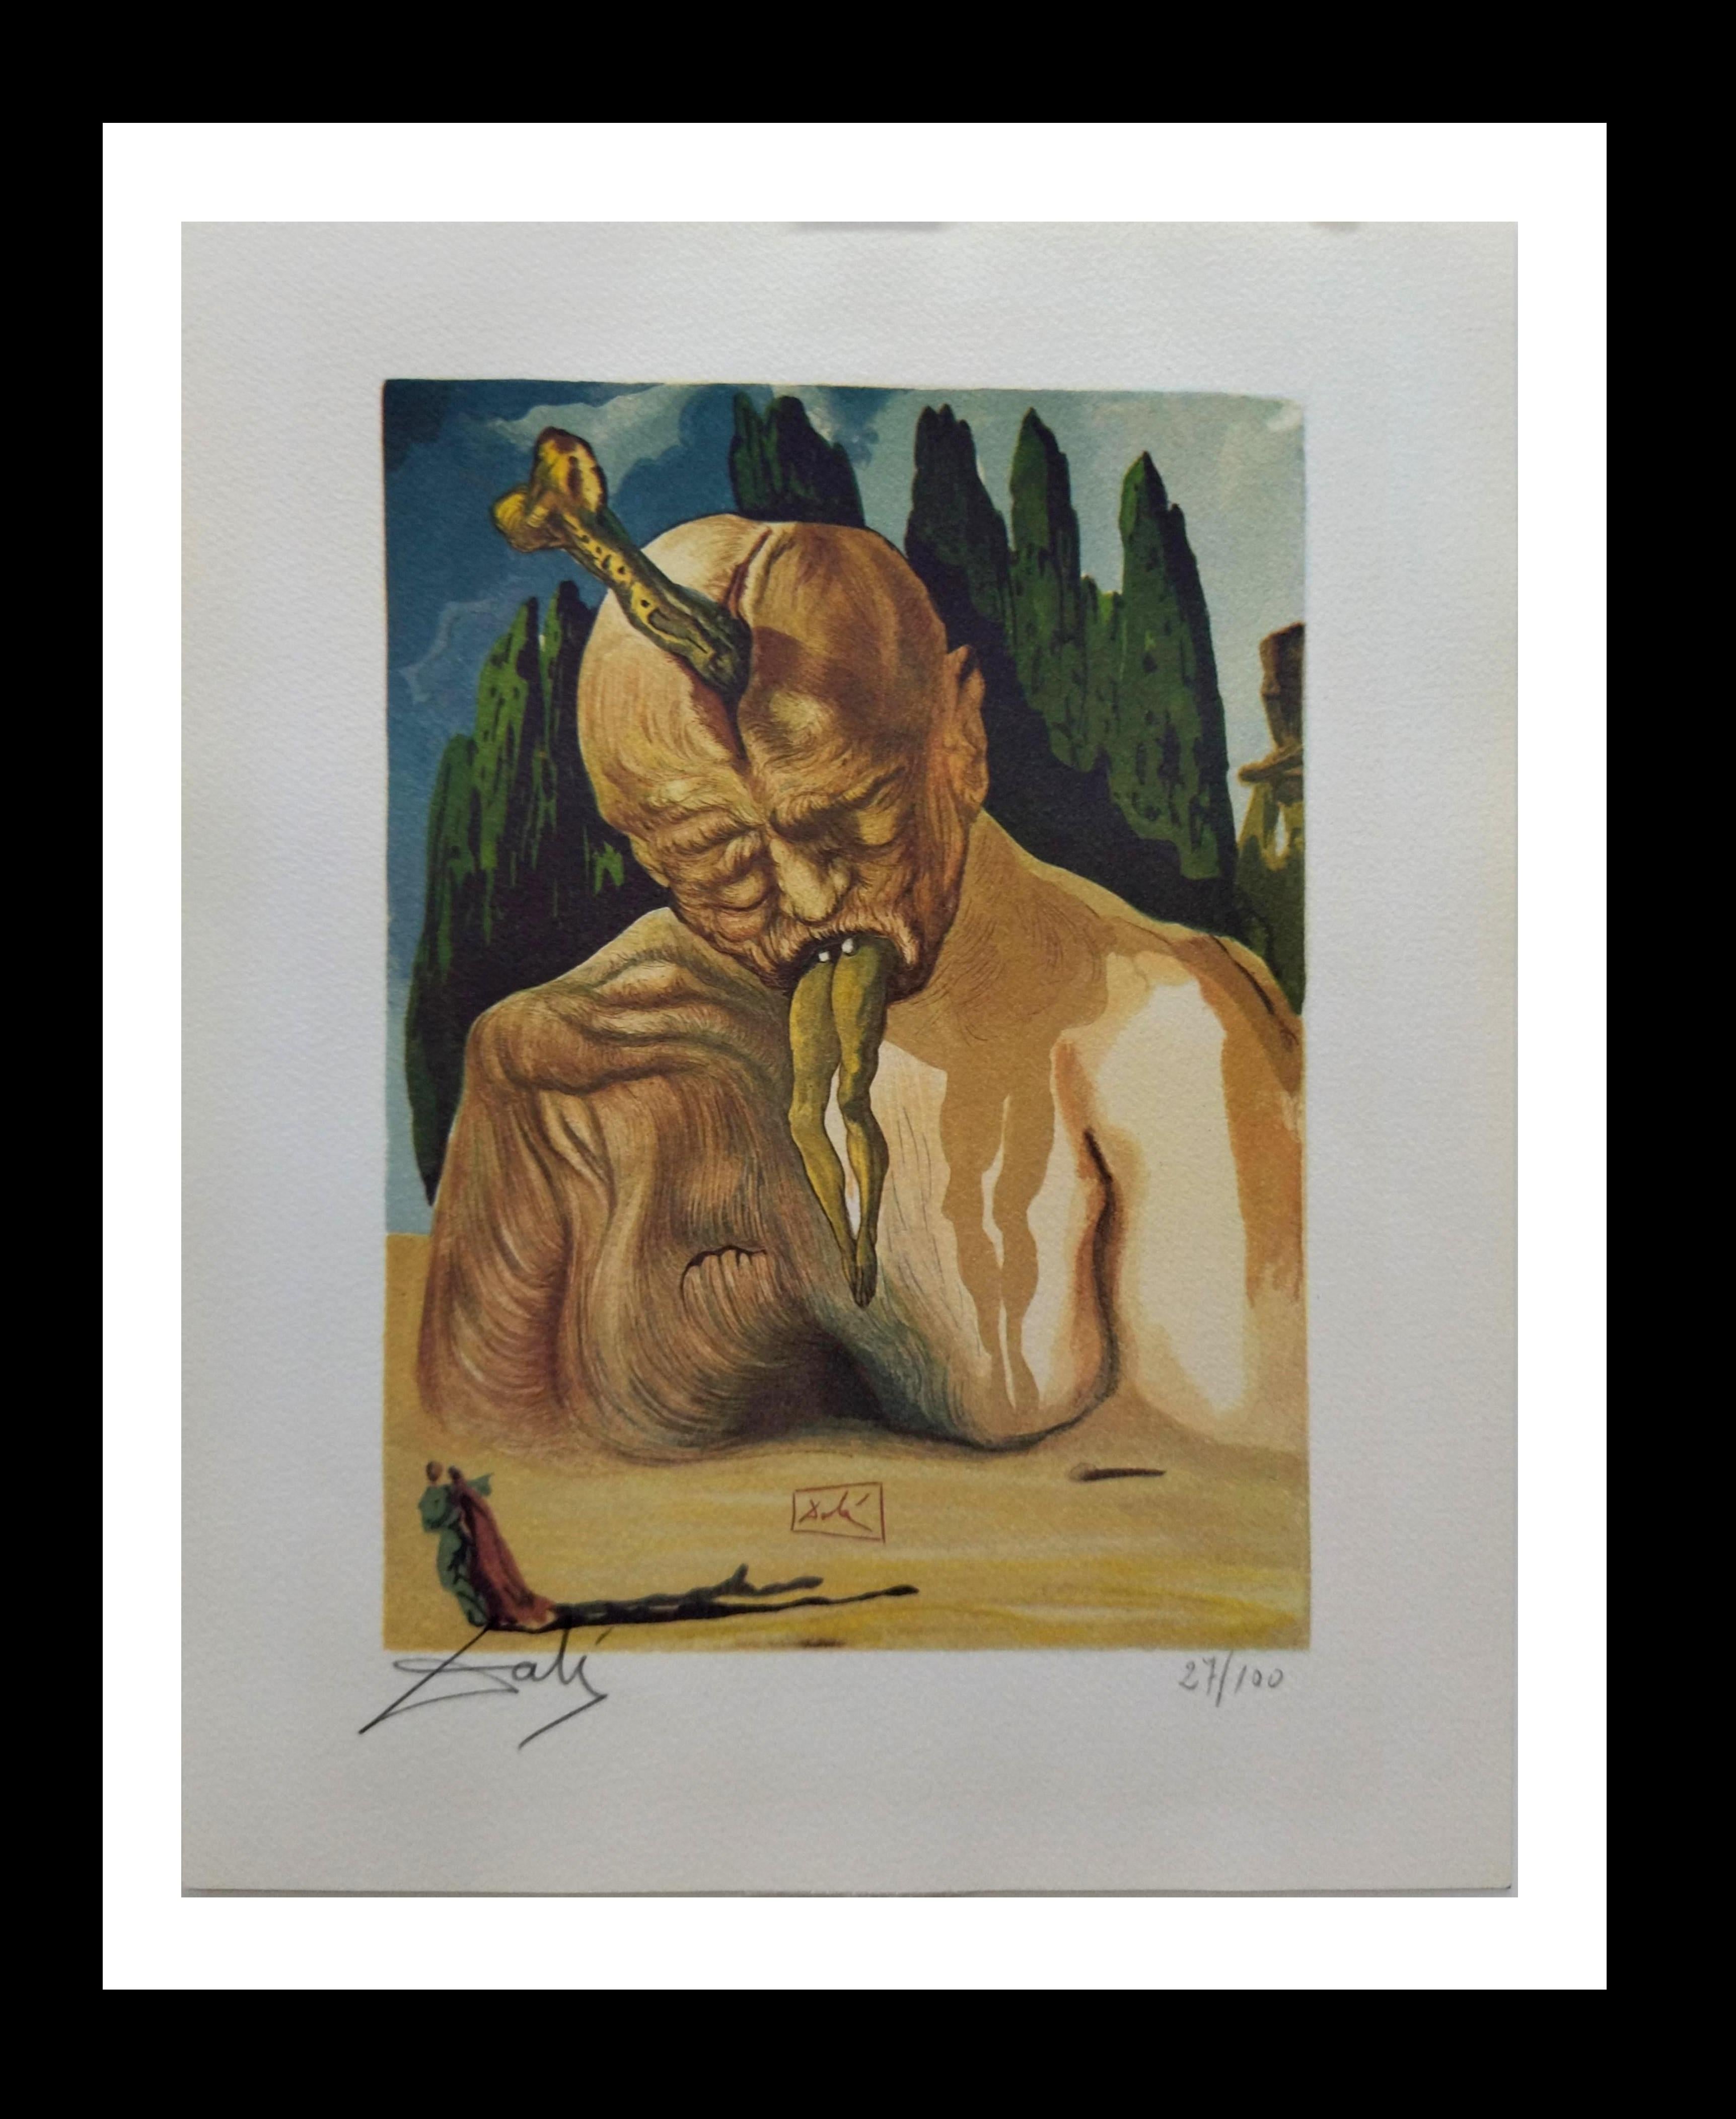 Abstract Print Salvador Dalí - Dali   Peinture de la Divina Comedia